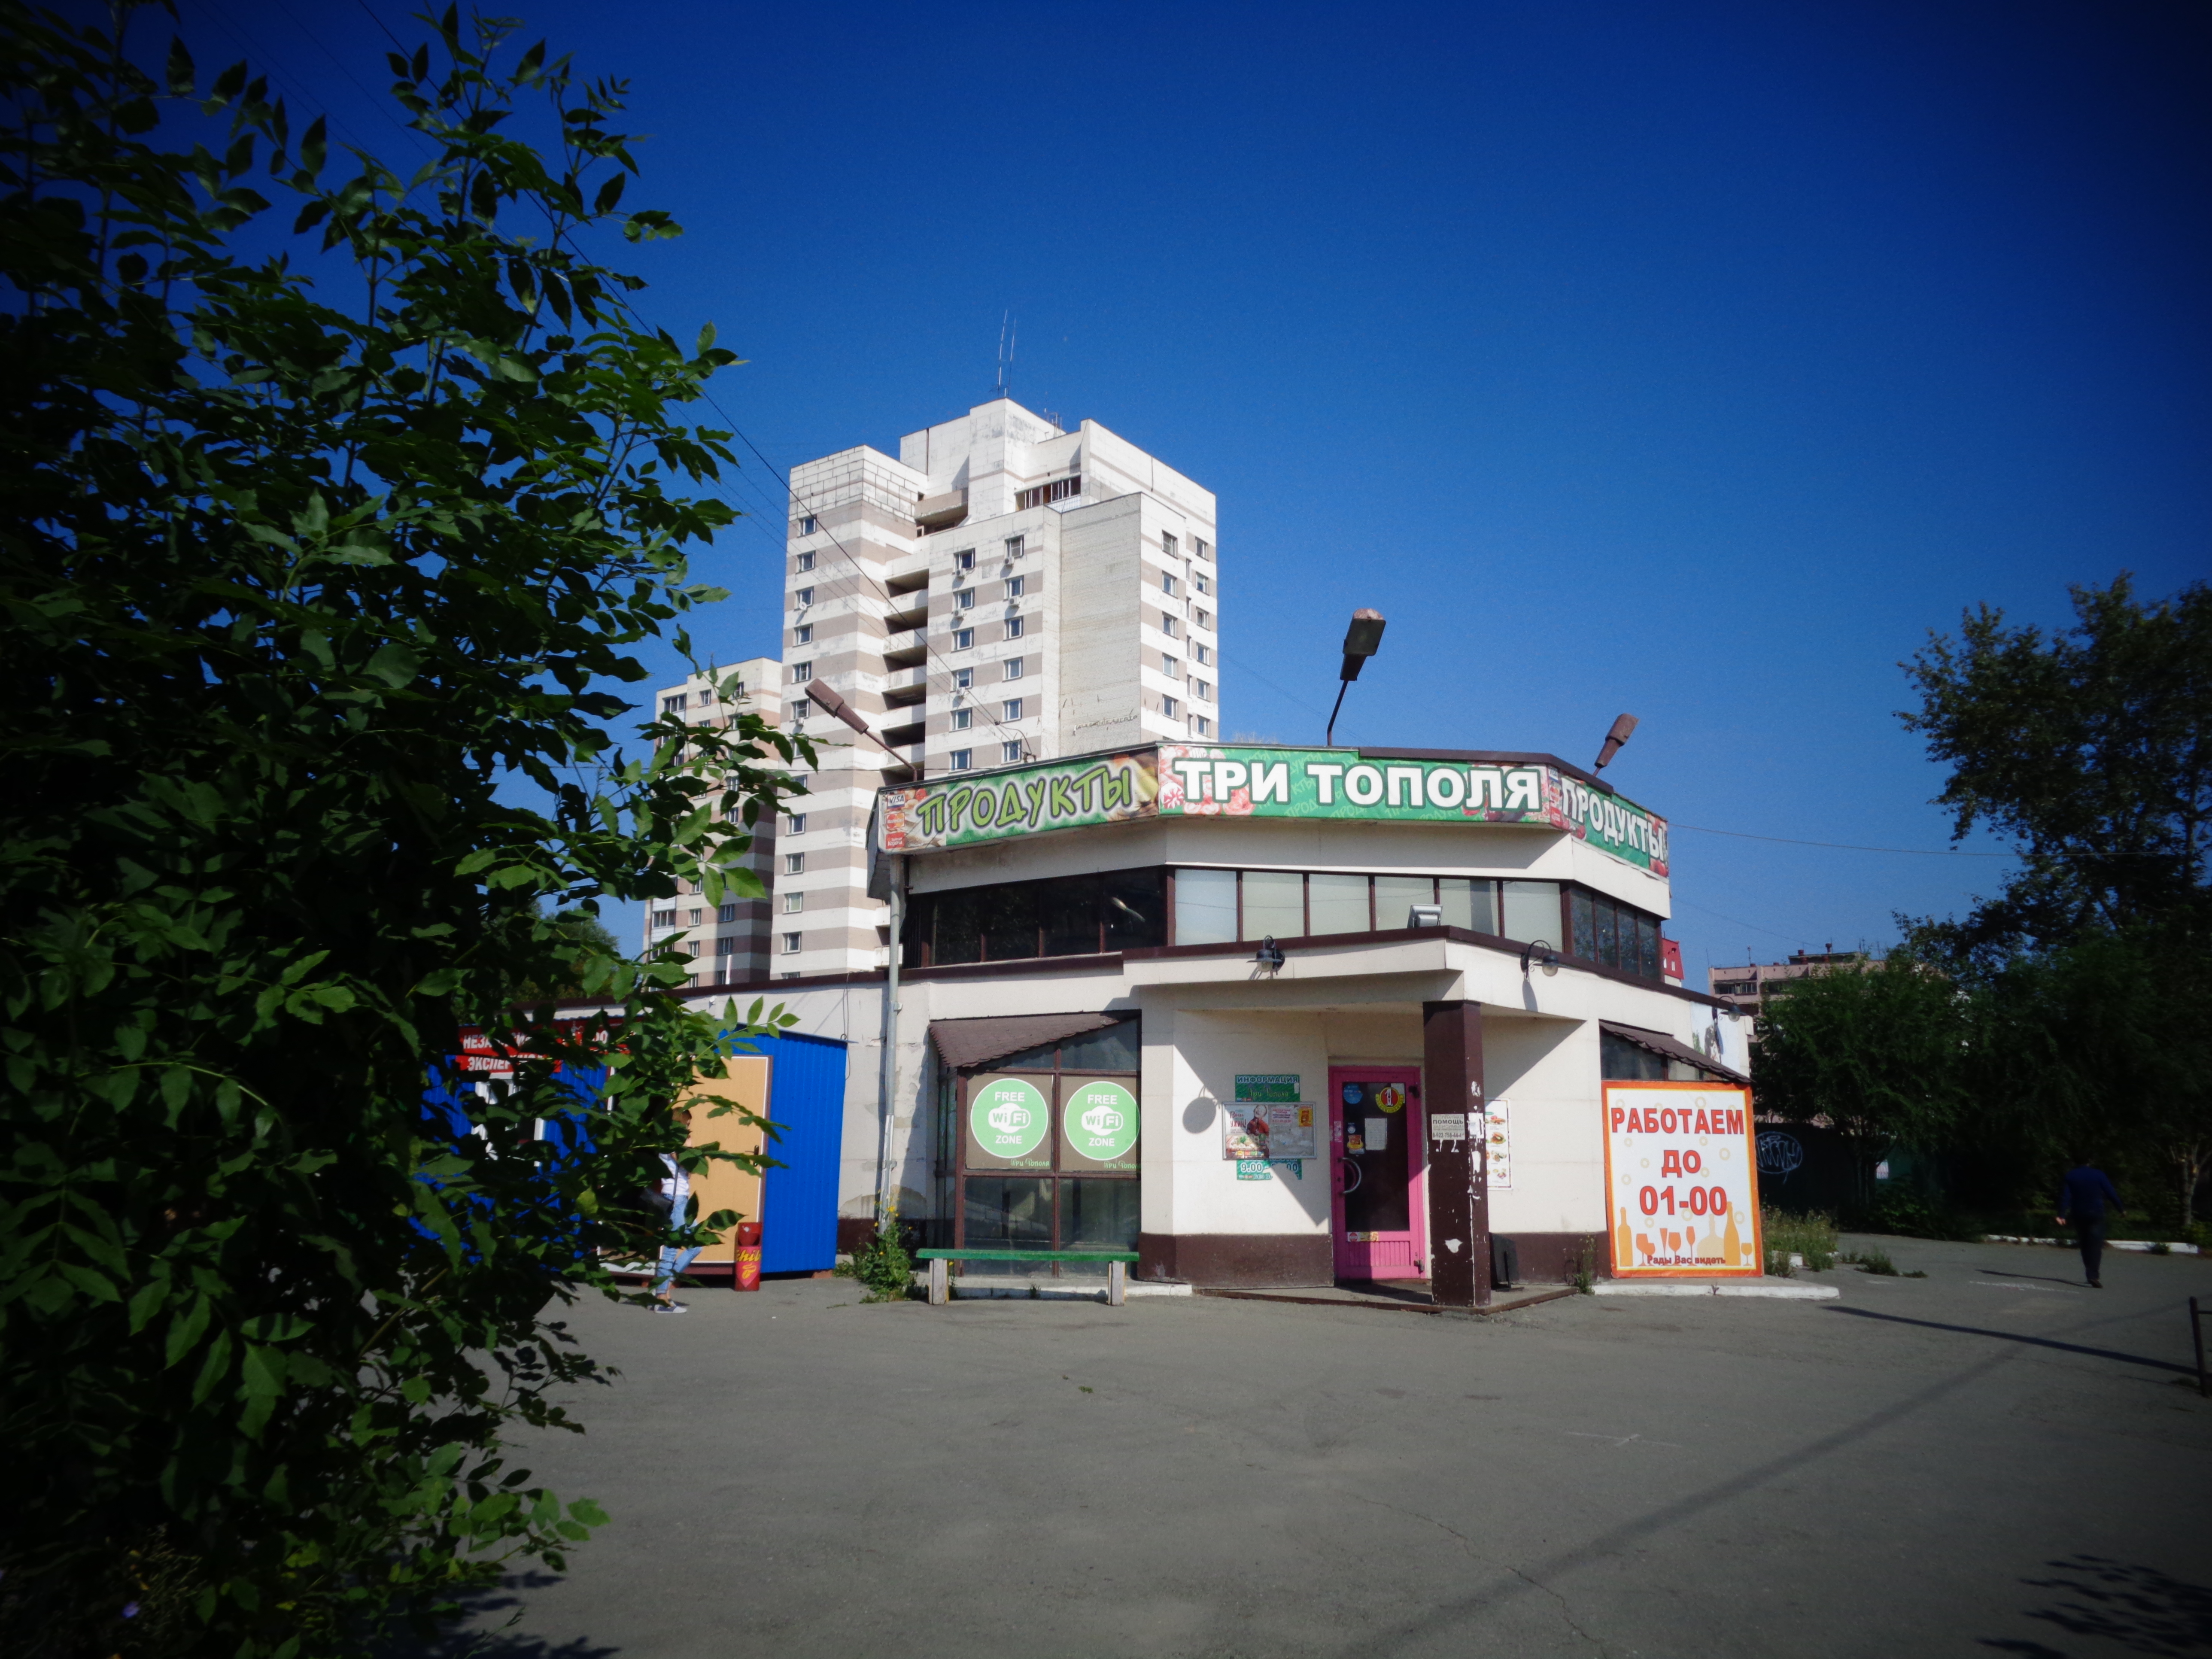 Кафе Челябинск три тополя